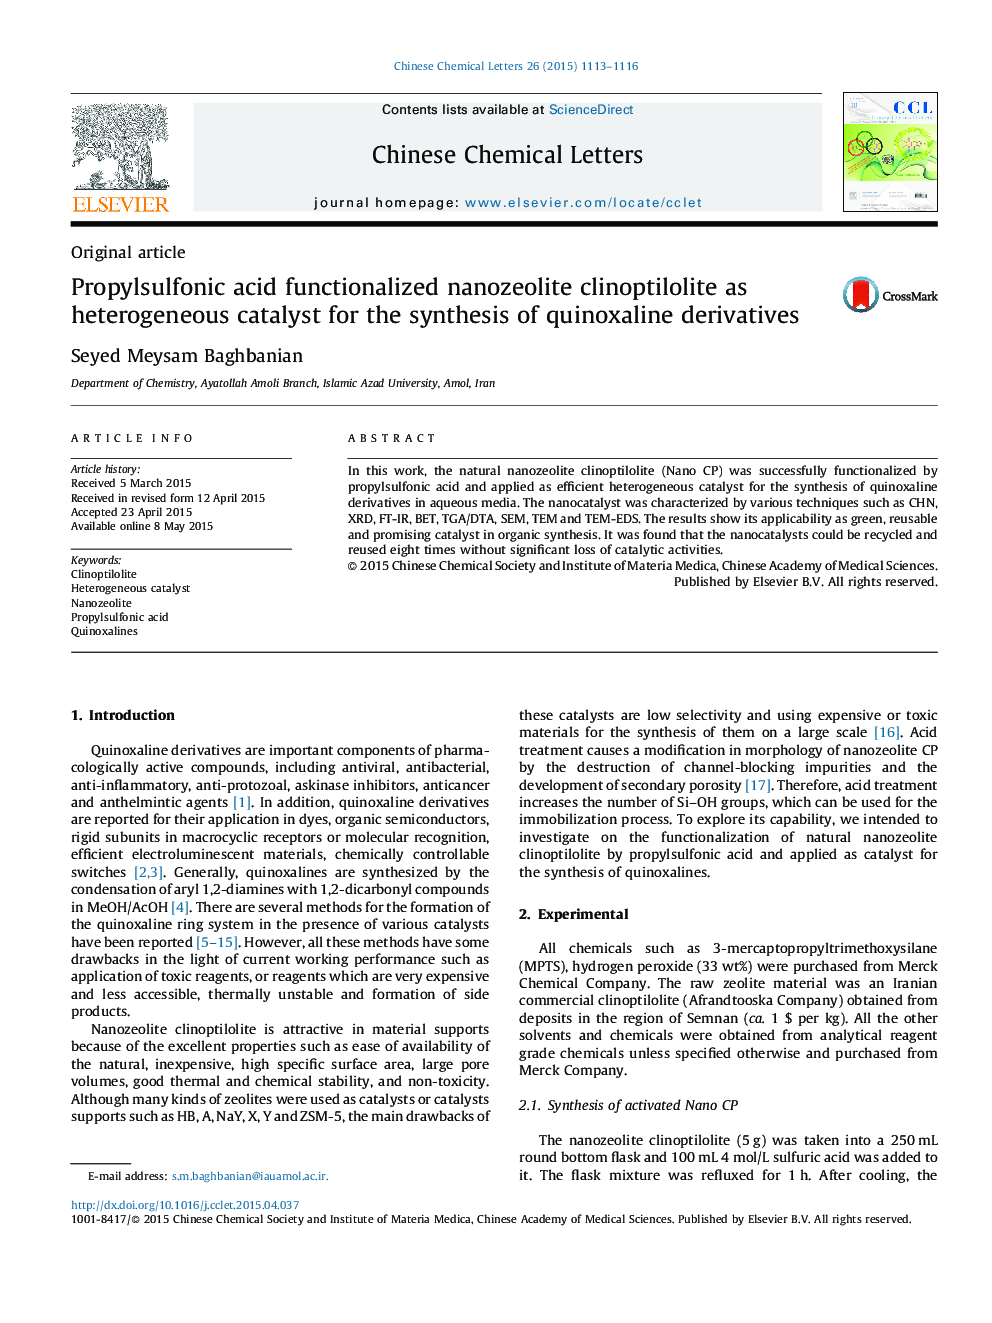 اسید پروپیل سولفونیک کلینوپتیولیت نانو زئولیت به عنوان کاتالیزور ناهمگن برای سنتز مشتقات کینوکسالیان 